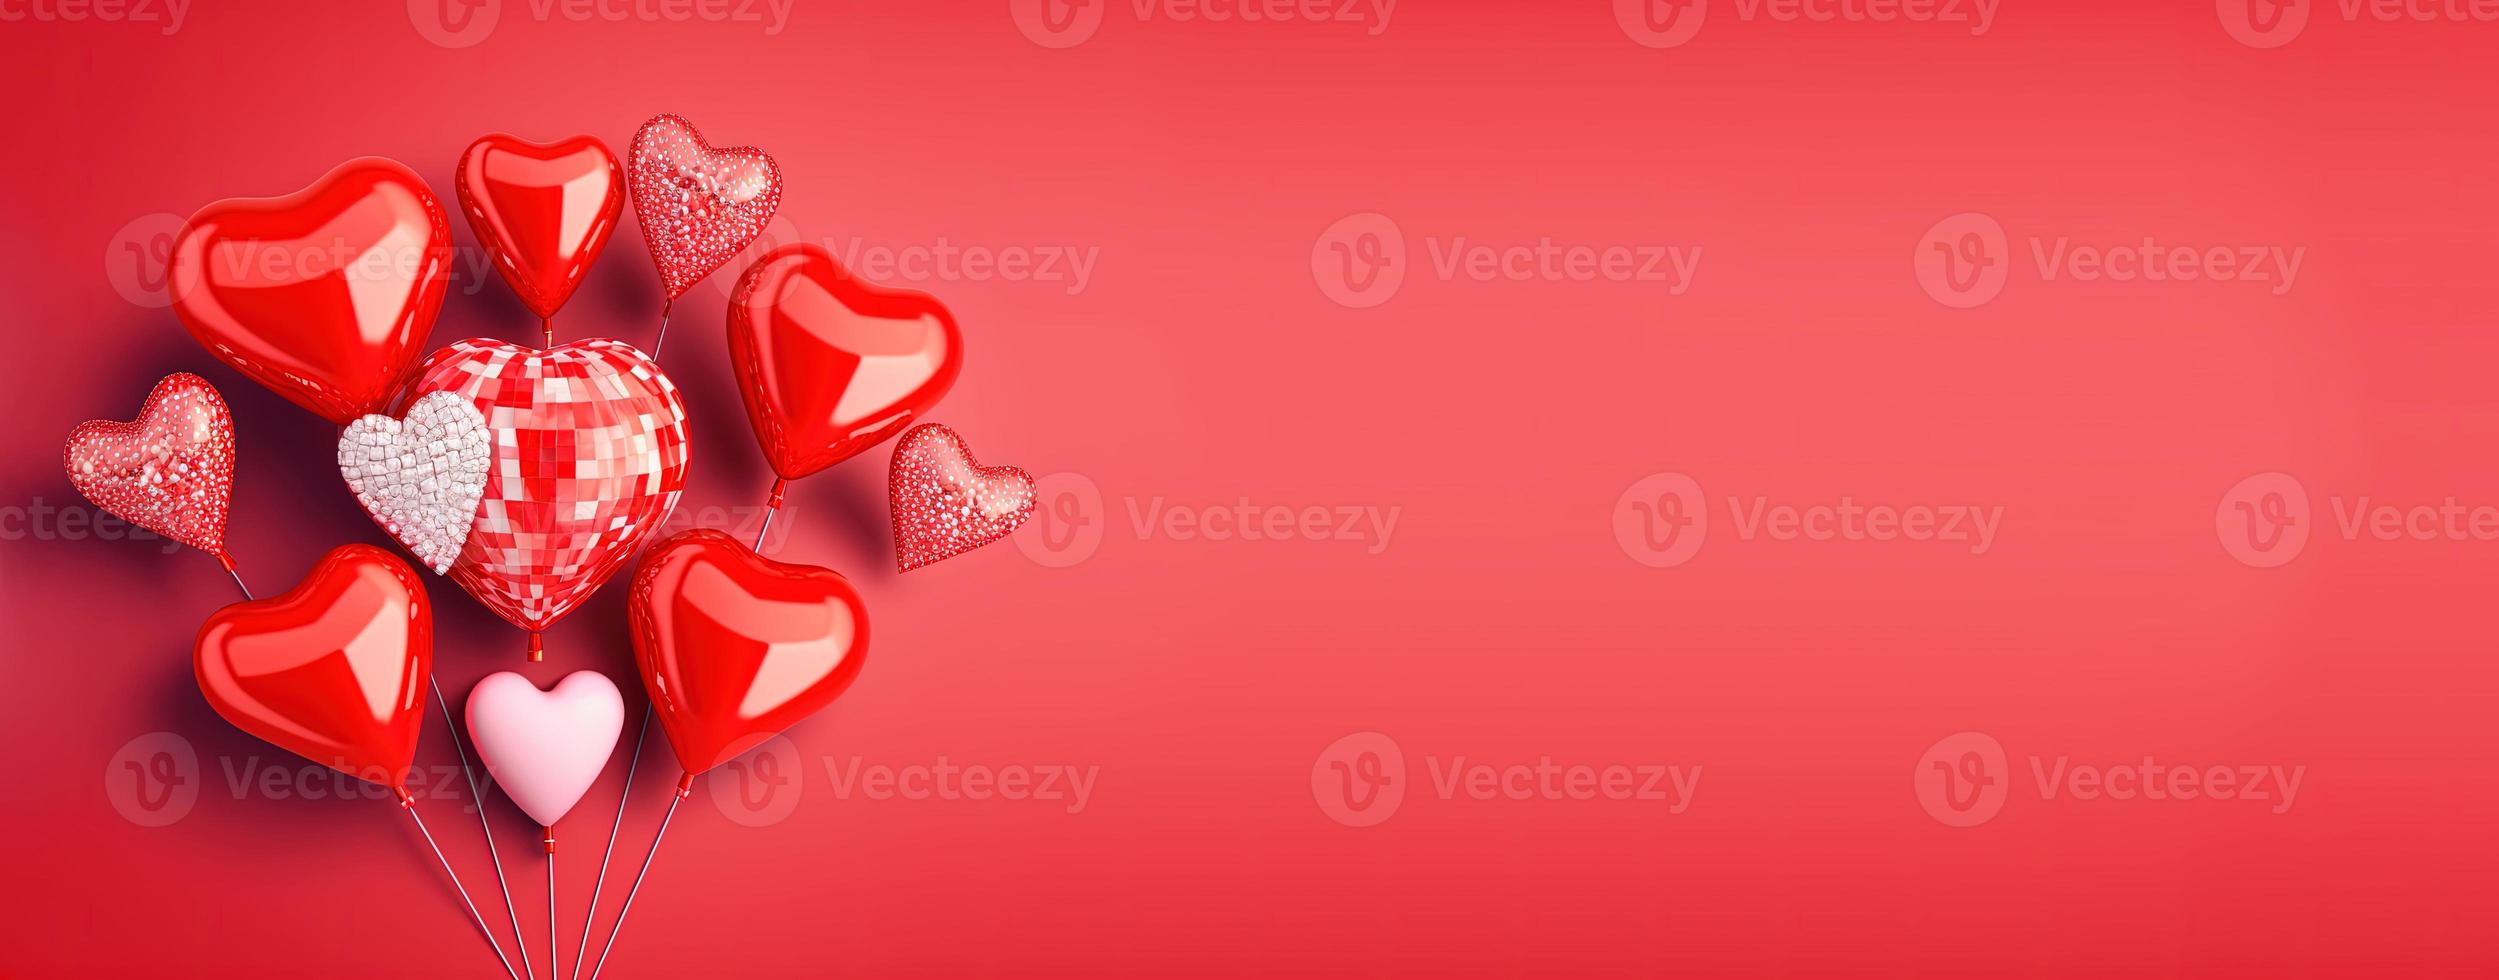 ilustração do dia dos namorados com um coração 3d vermelho em um fundo de banner foto